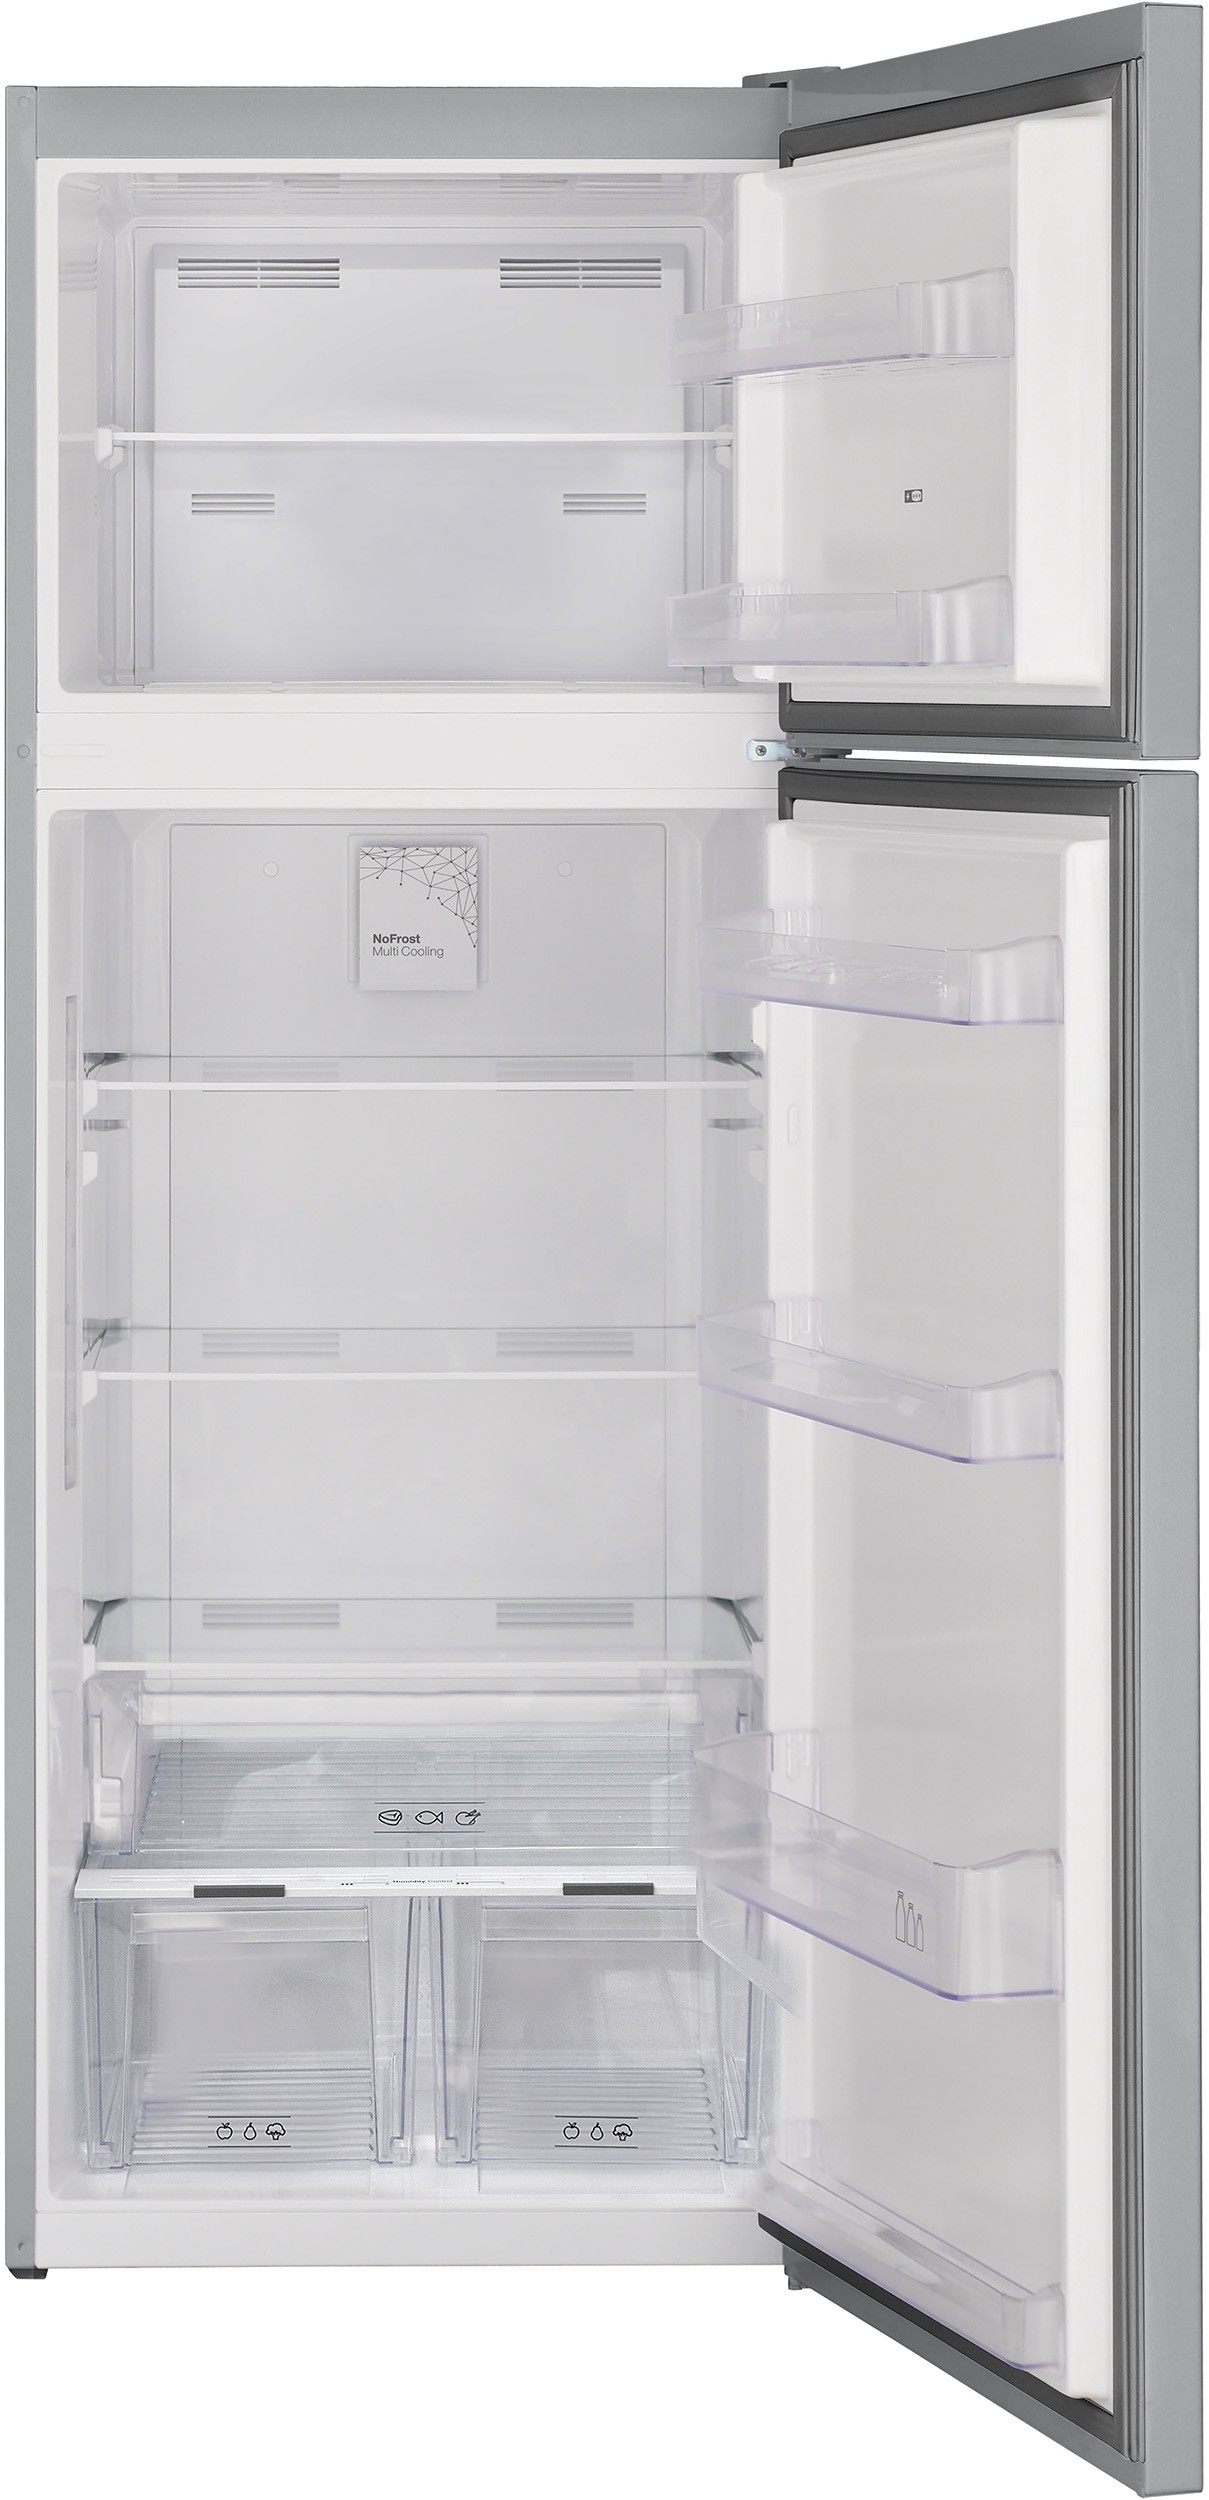 TELEFUNKEN Réfrigérateur congélateur haut No Frost 435L Inox - R2P473NEX